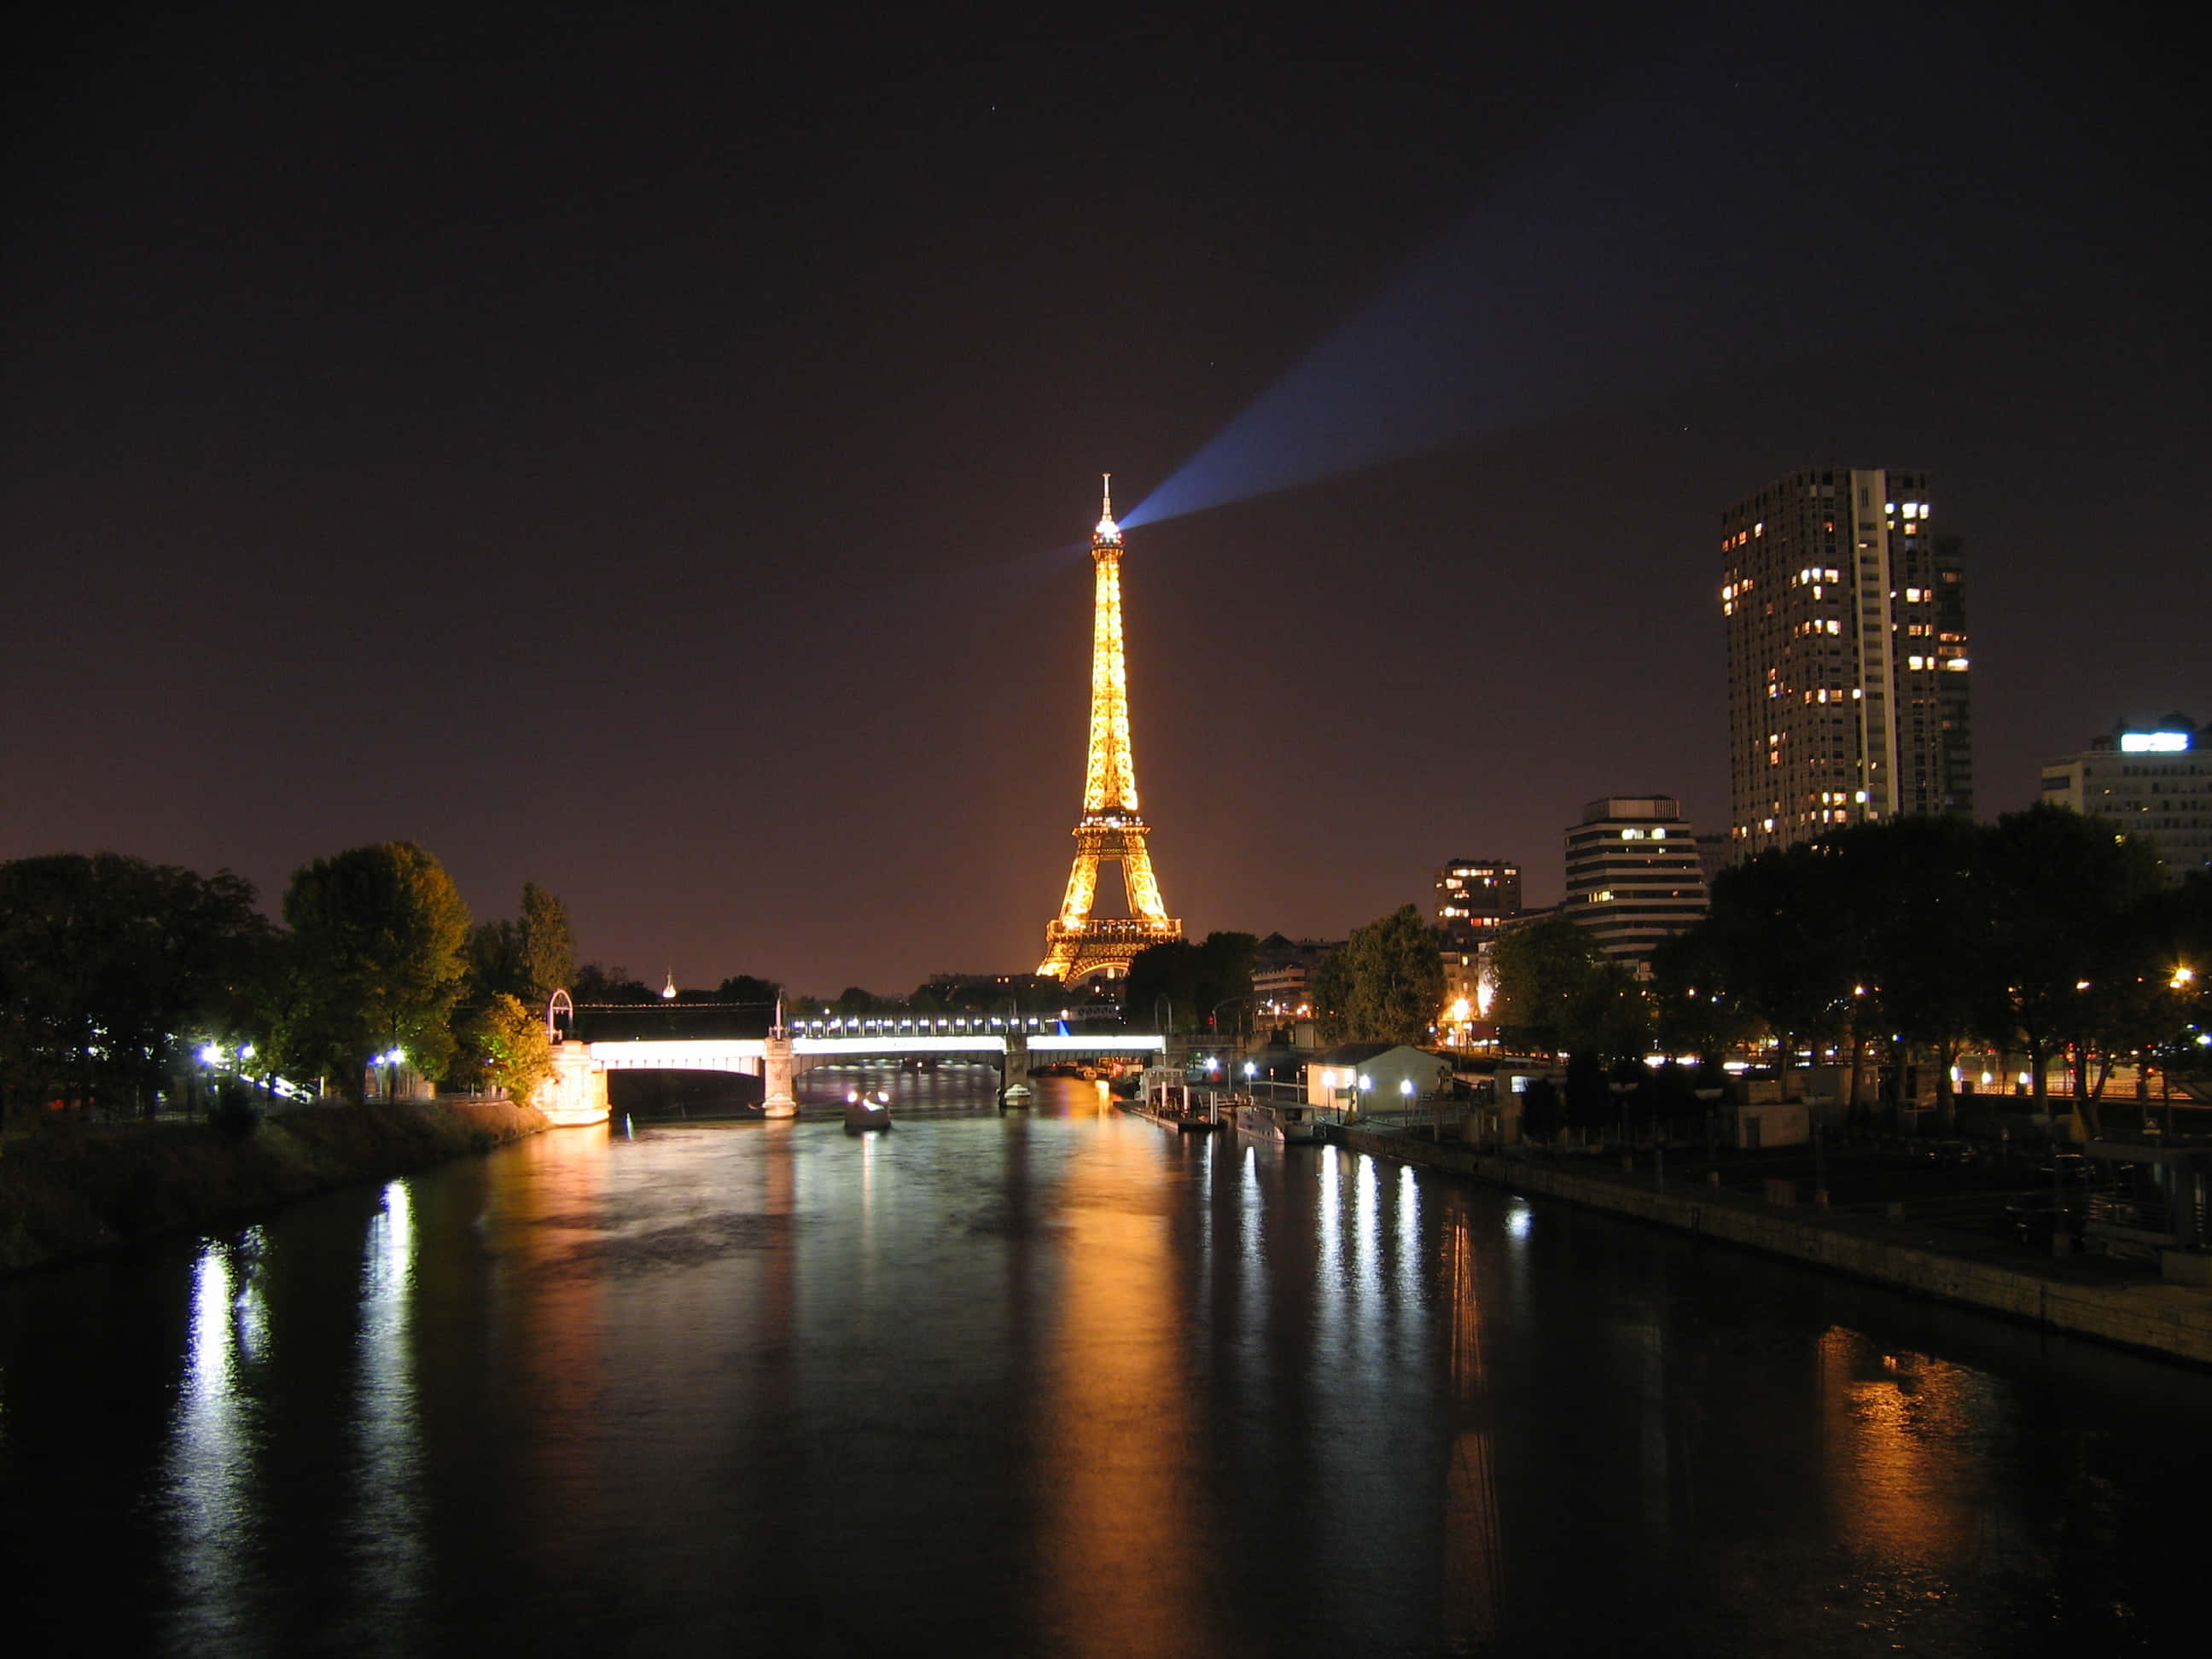 Imagende Vista De París, Francia, Con La Torre Eiffel Iluminada Por La Noche.